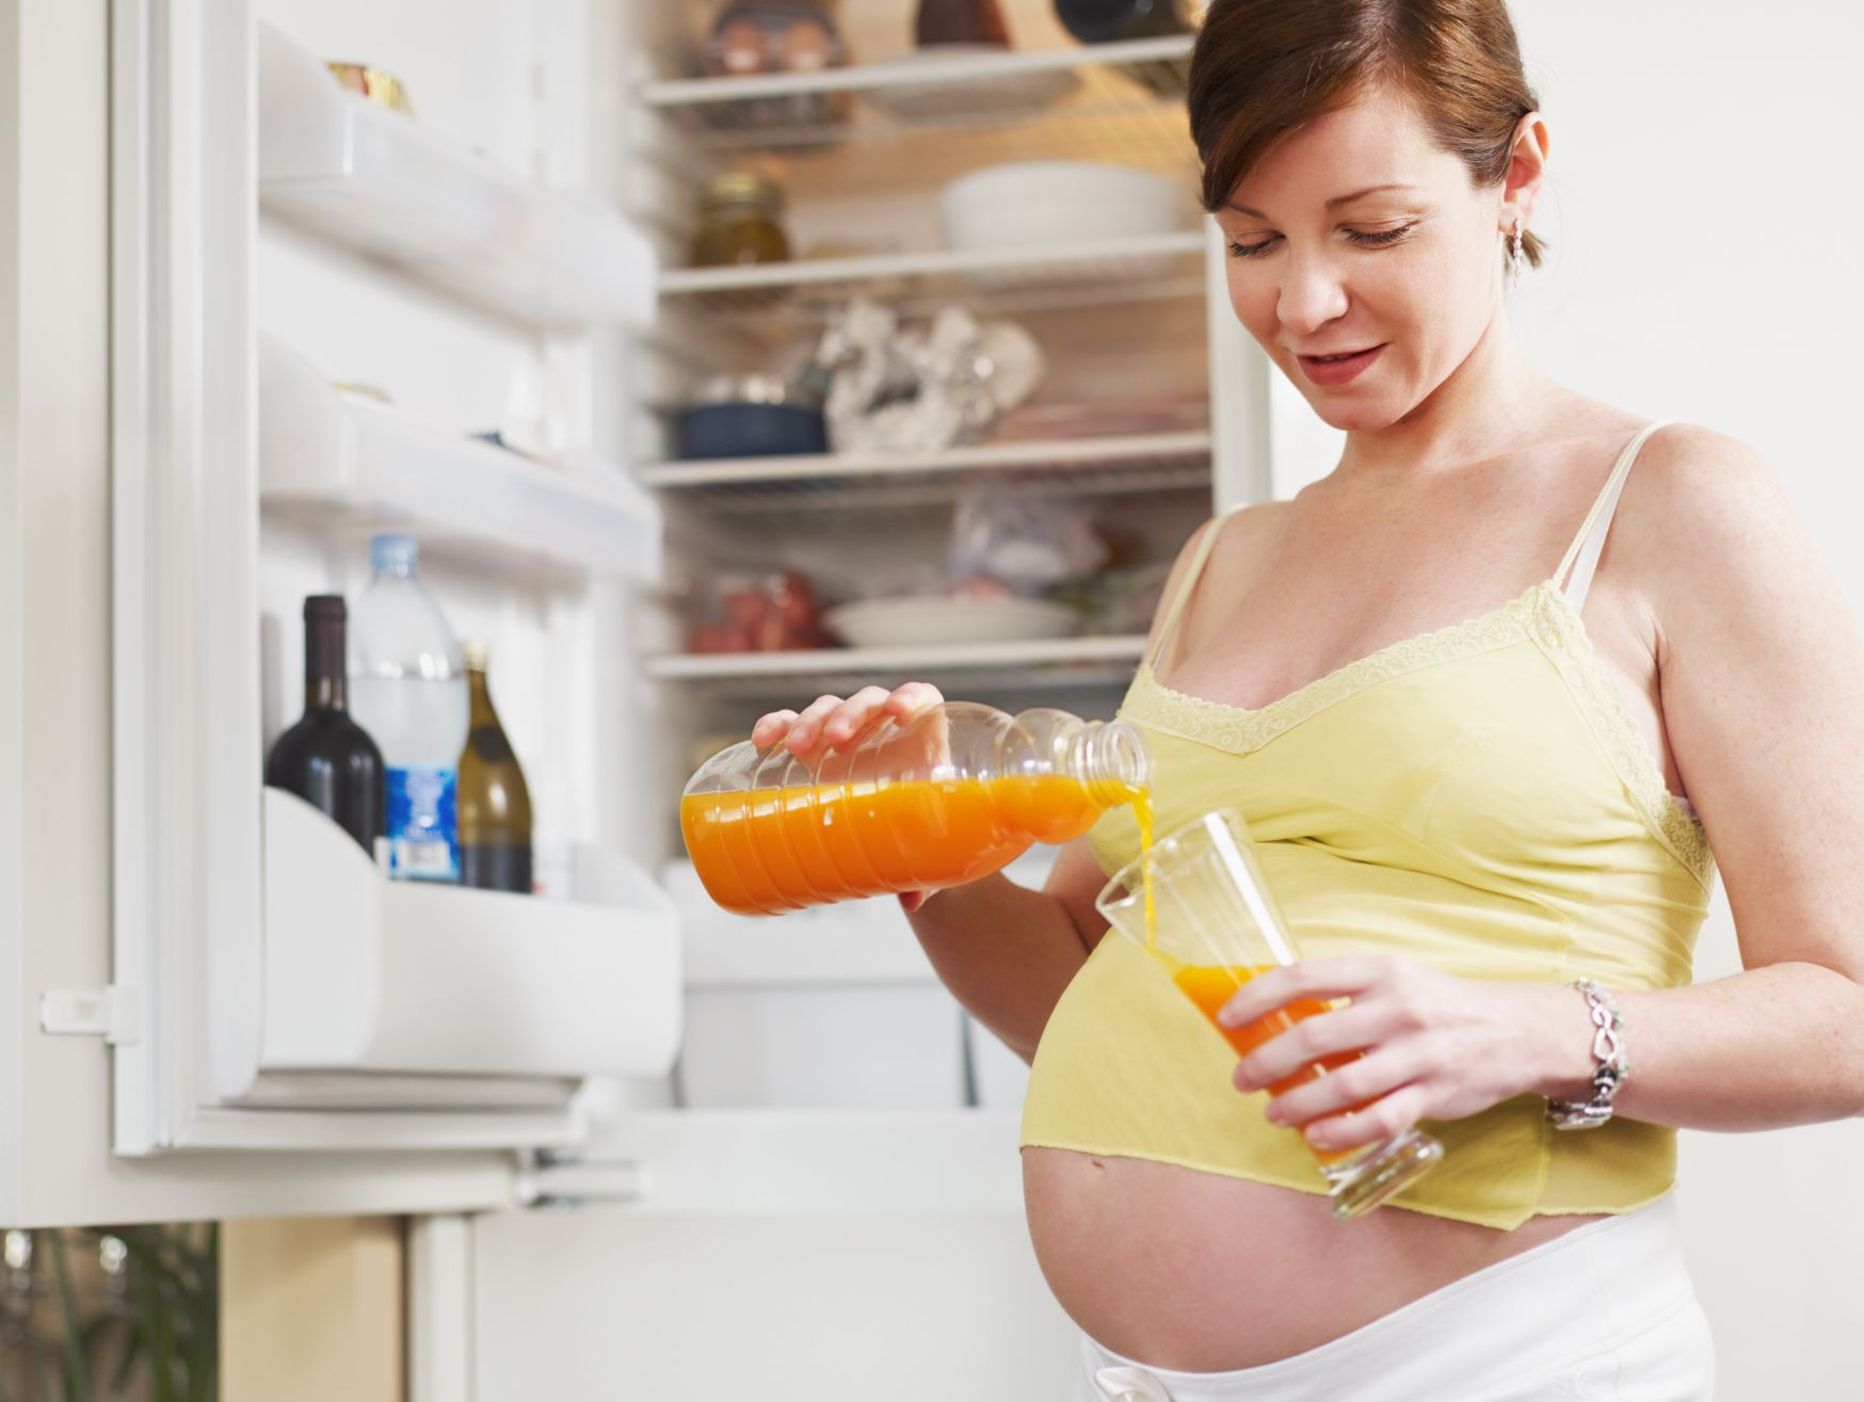 Piisav ja korralik toitumine on raseduse ajal ülioluline.